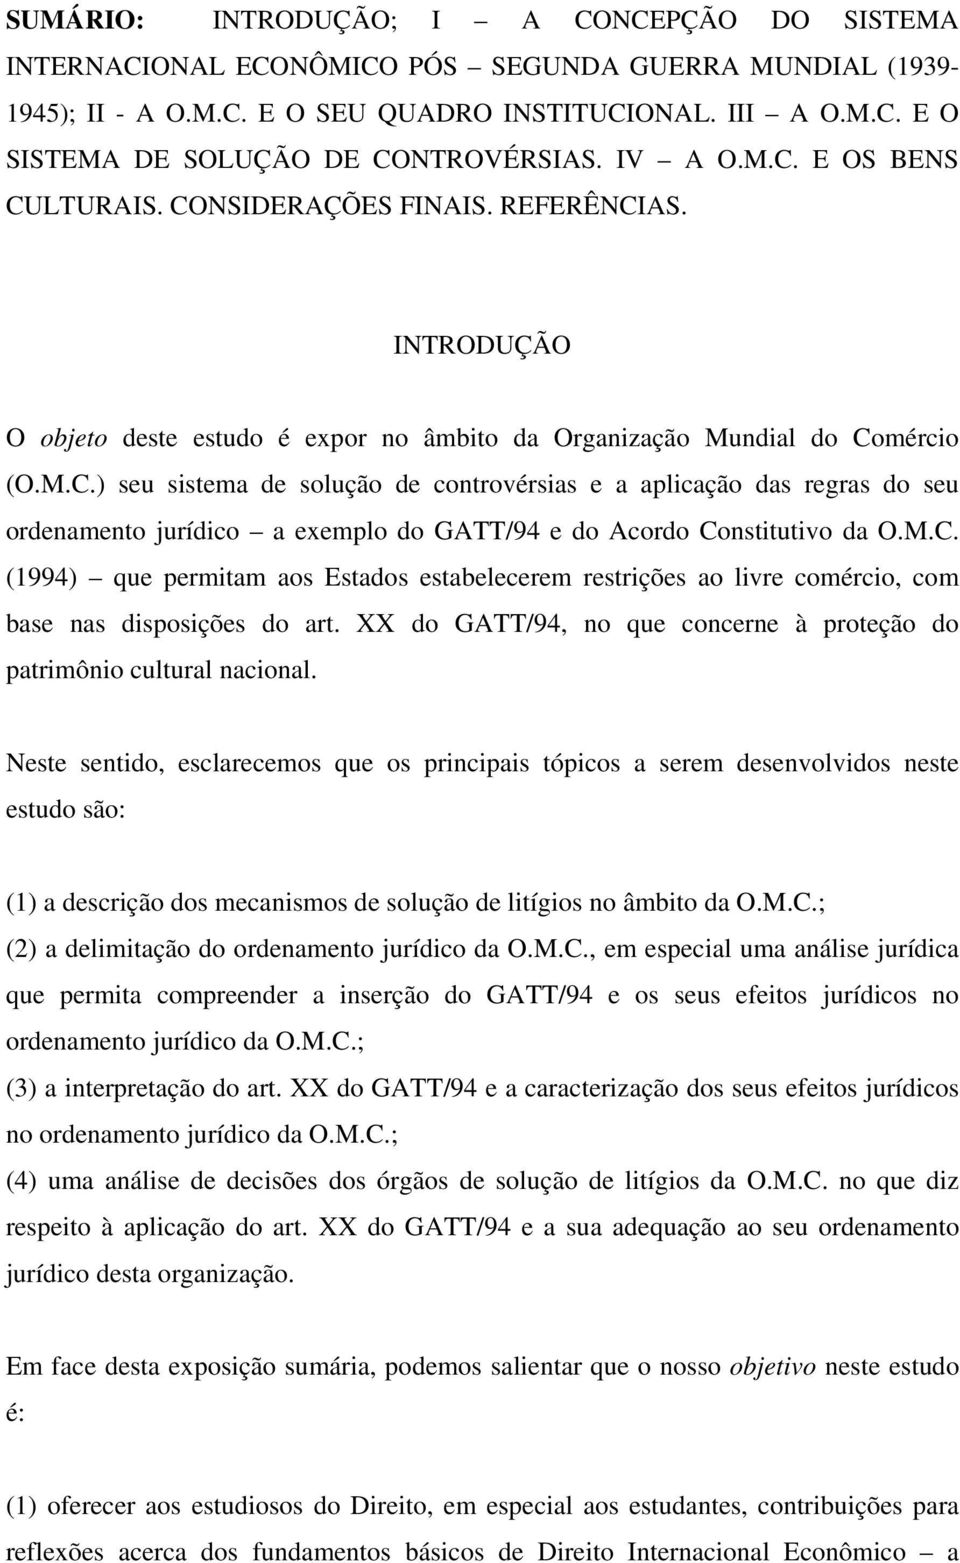 M.C. (1994) que permitam aos Estados estabelecerem restrições ao livre comércio, com base nas disposições do art. XX do GATT/94, no que concerne à proteção do patrimônio cultural nacional.